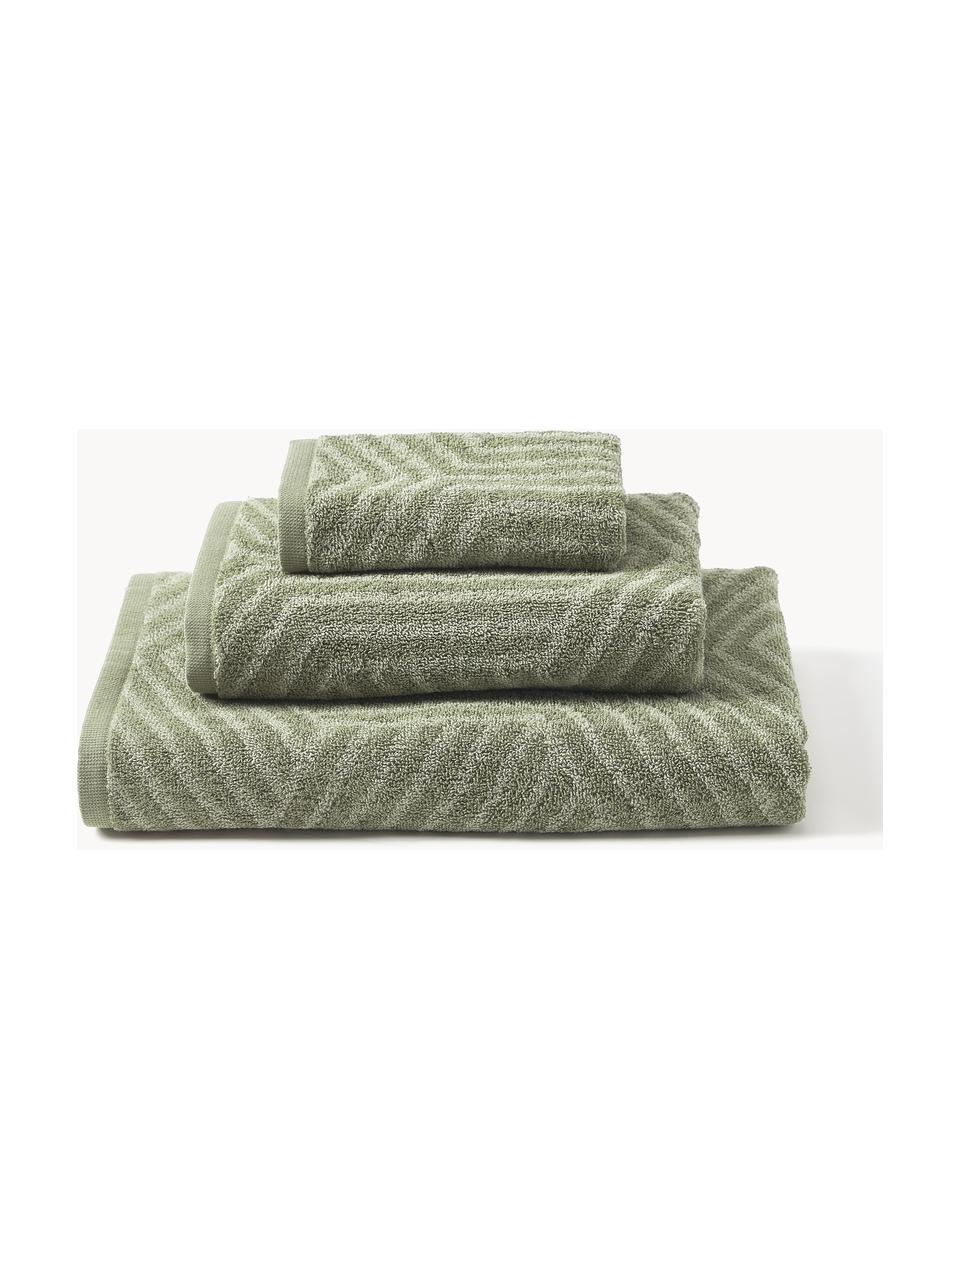 Lot de serviettes de bain Fatu, tailles variées, Tons vert olive, 3 éléments (1 serviette invité, 1 serviette de toilette et 1 drap de bain)